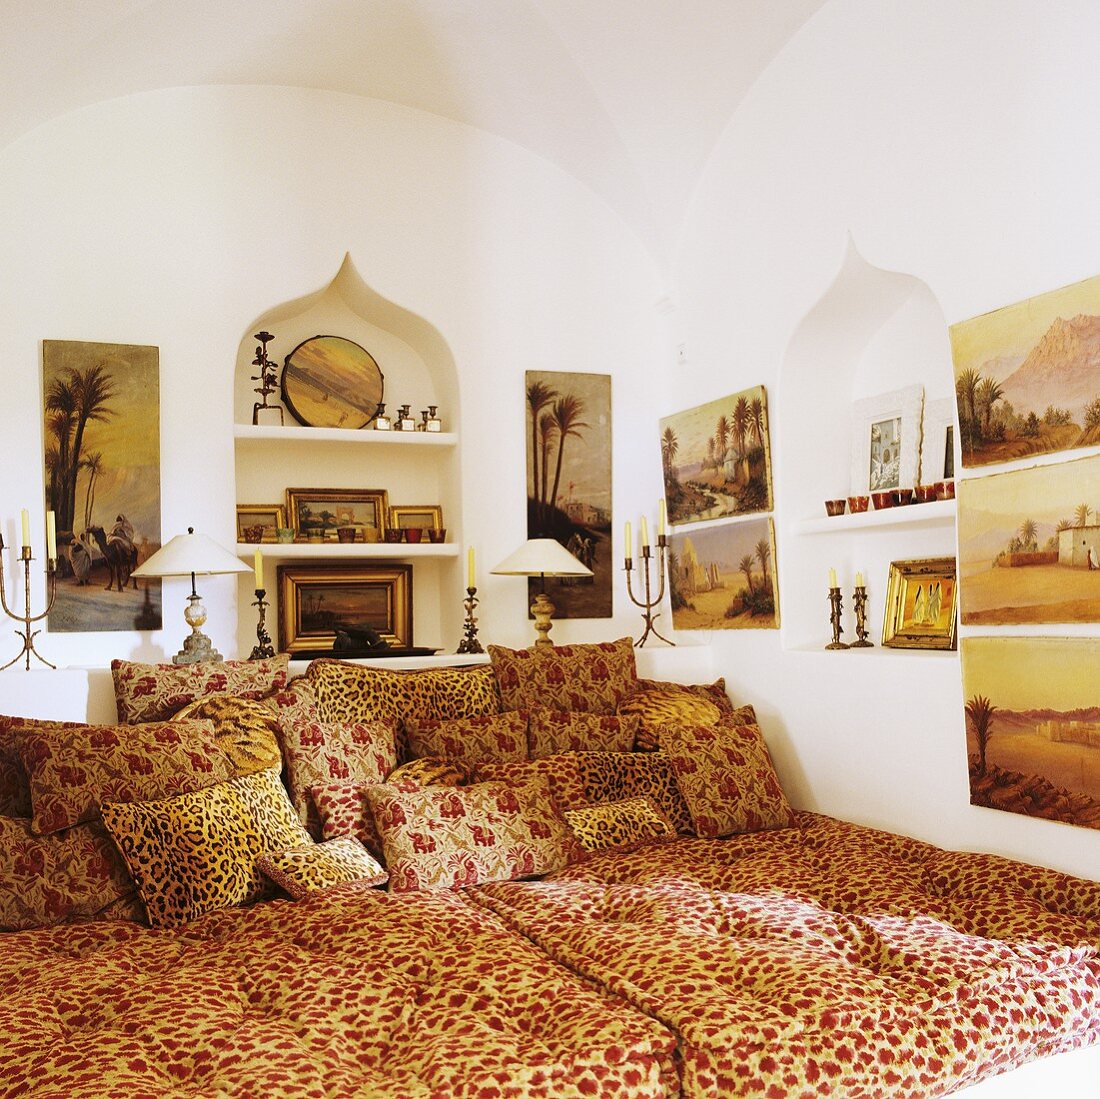 Edles Matratzenlager im Haus mit orientalischem Flair